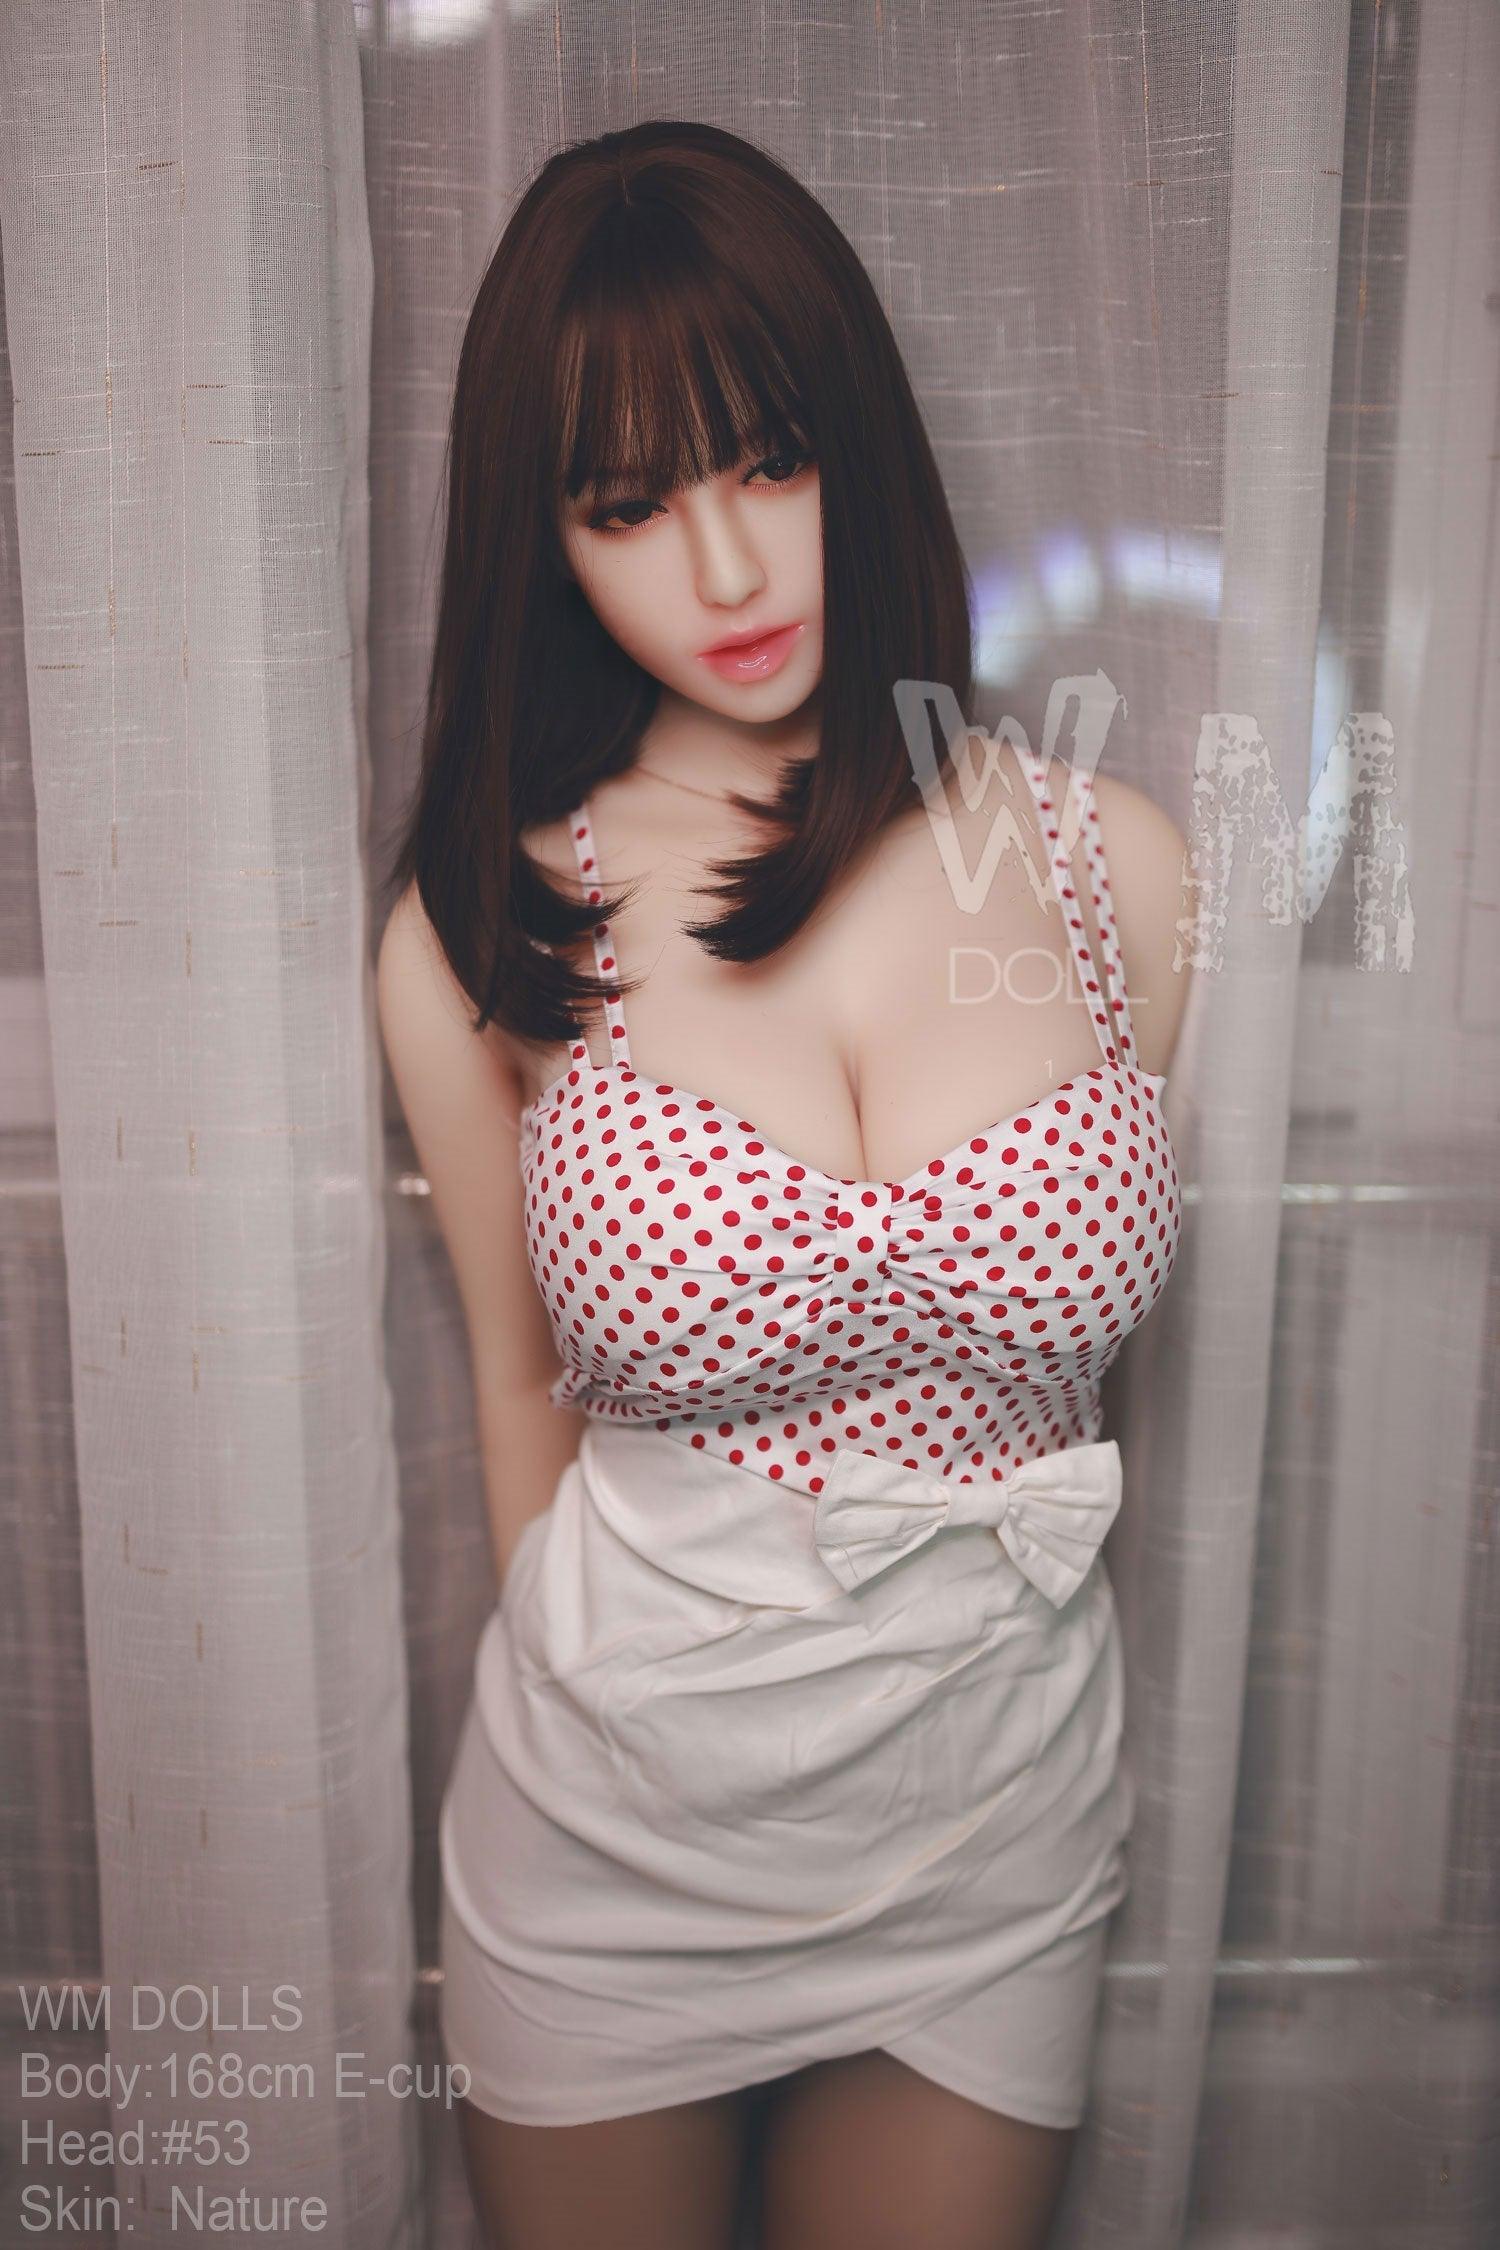 WM | Asian Girl - 5ft 6/ 168cm E Cup Sex Doll - Anya - SuperLoveDoll